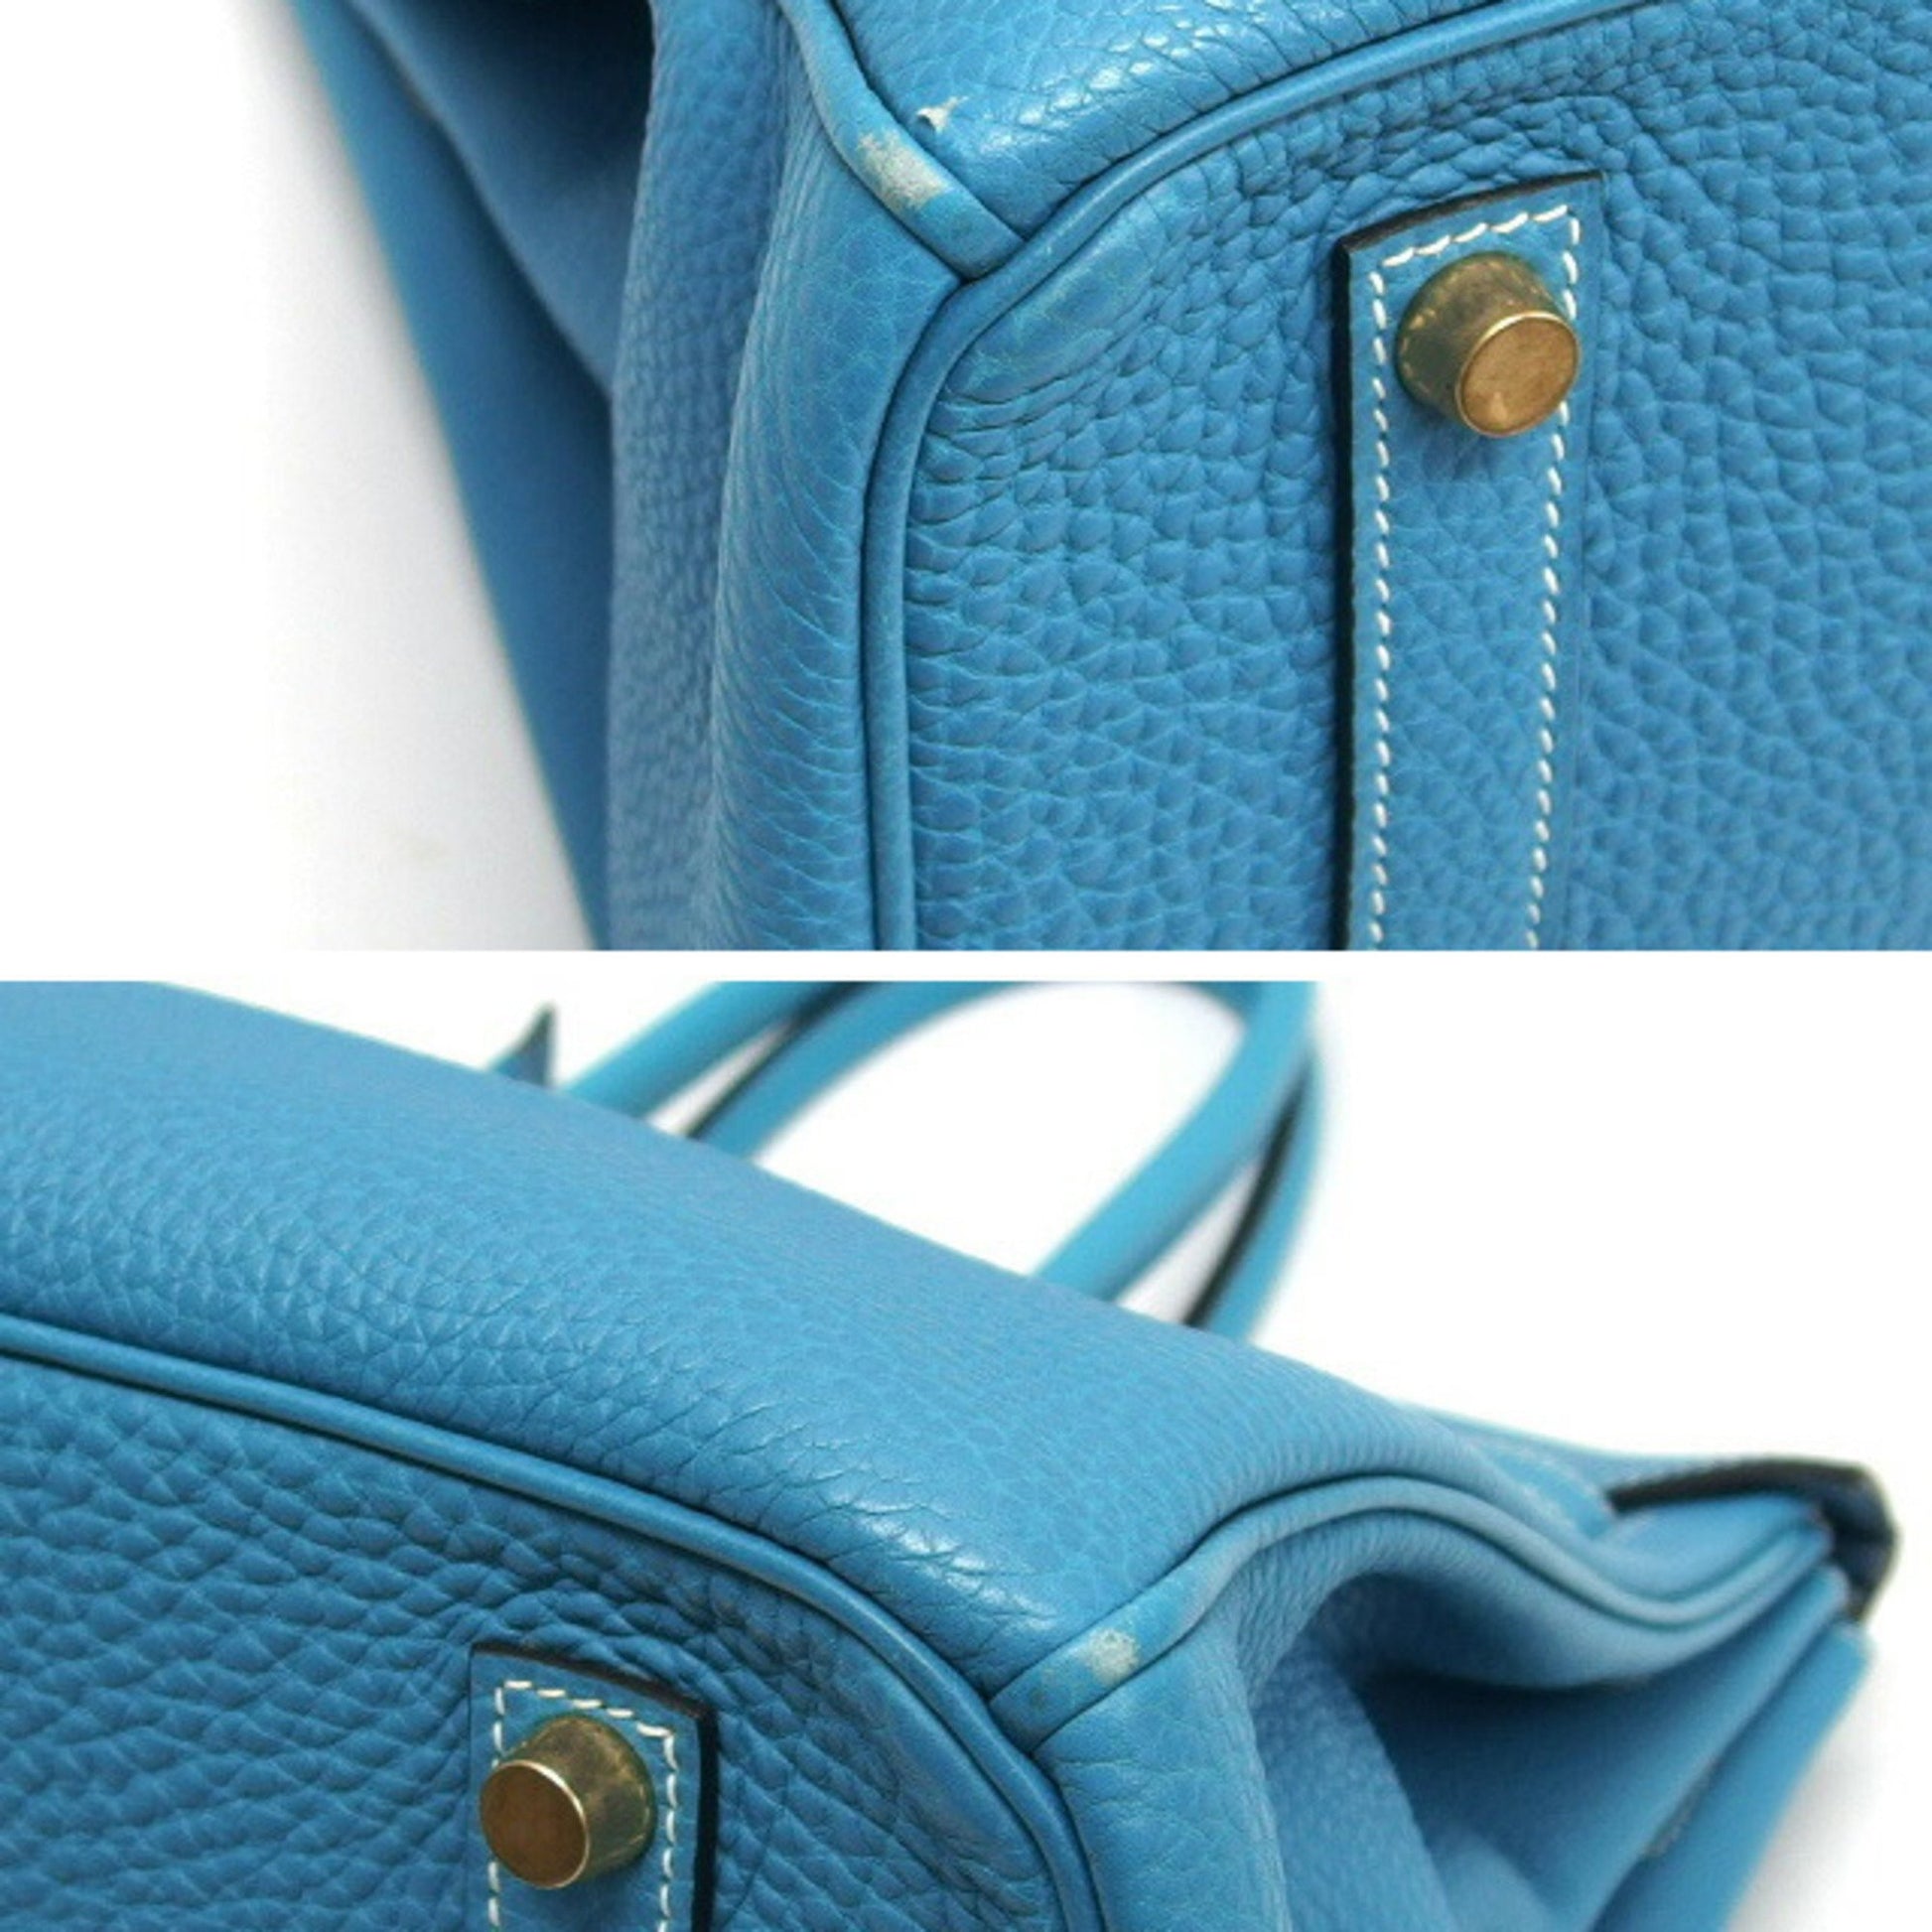 ViaAnabel - #MondayBlues Hermes Birkin 35 in Blue Jean